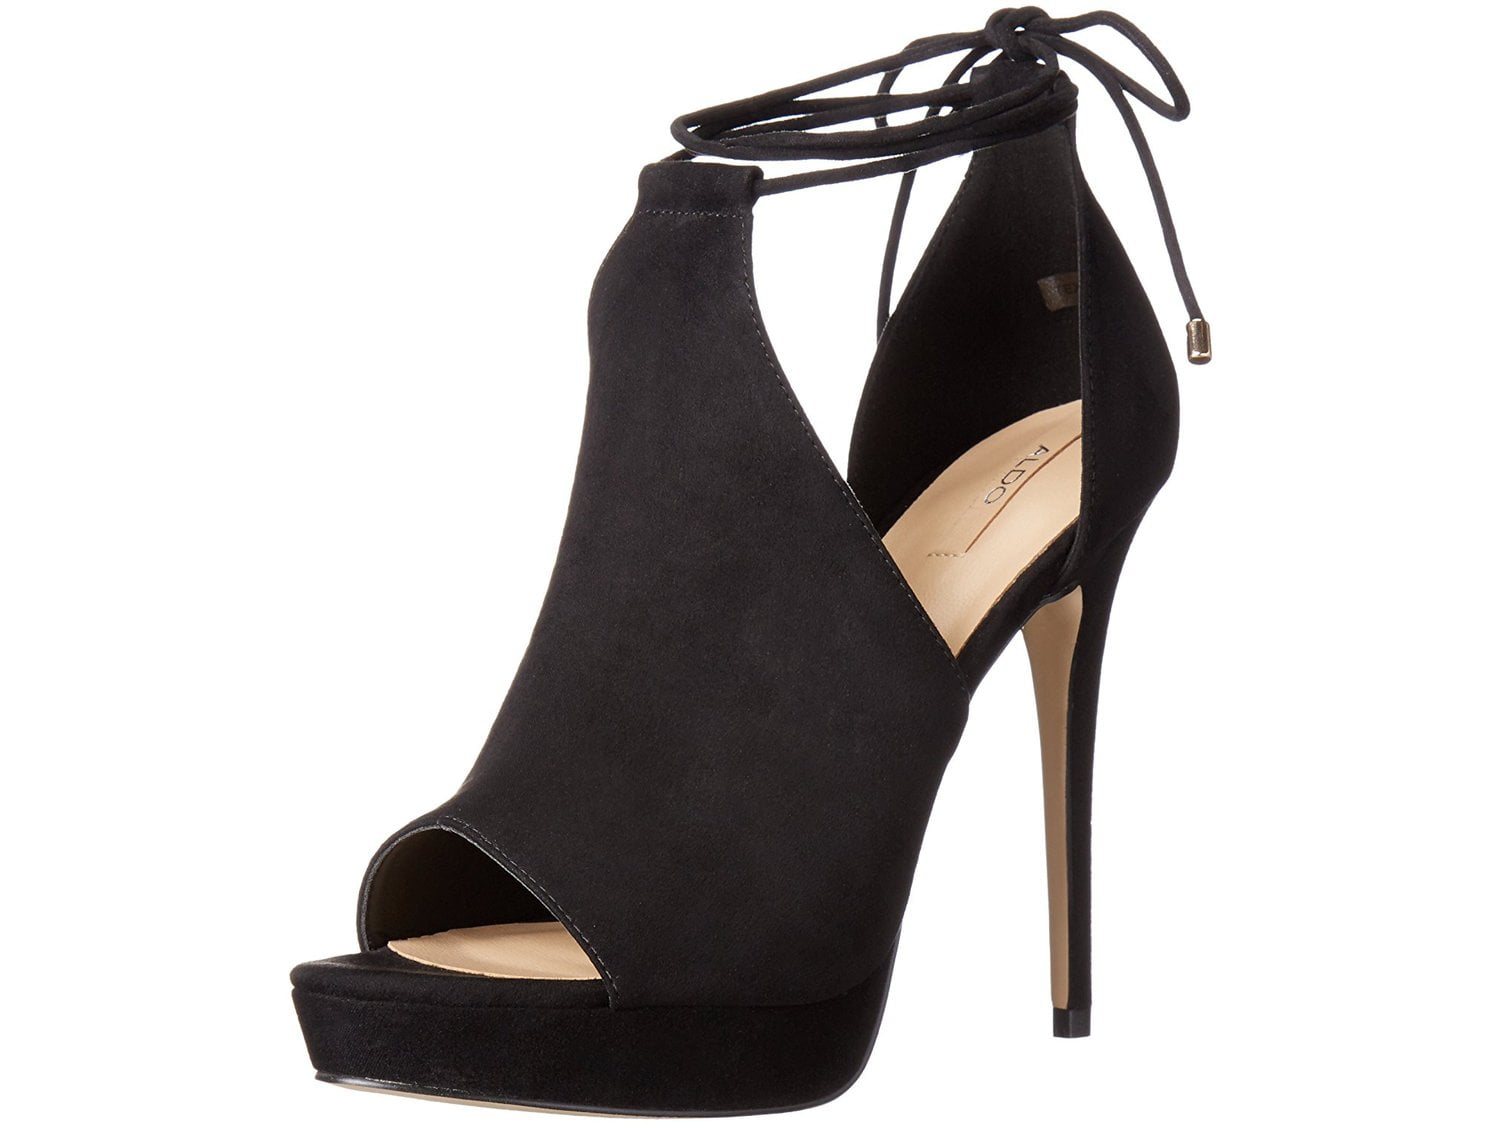 ALDO black high heels, Women's Fashion, Footwear, Heels on Carousell